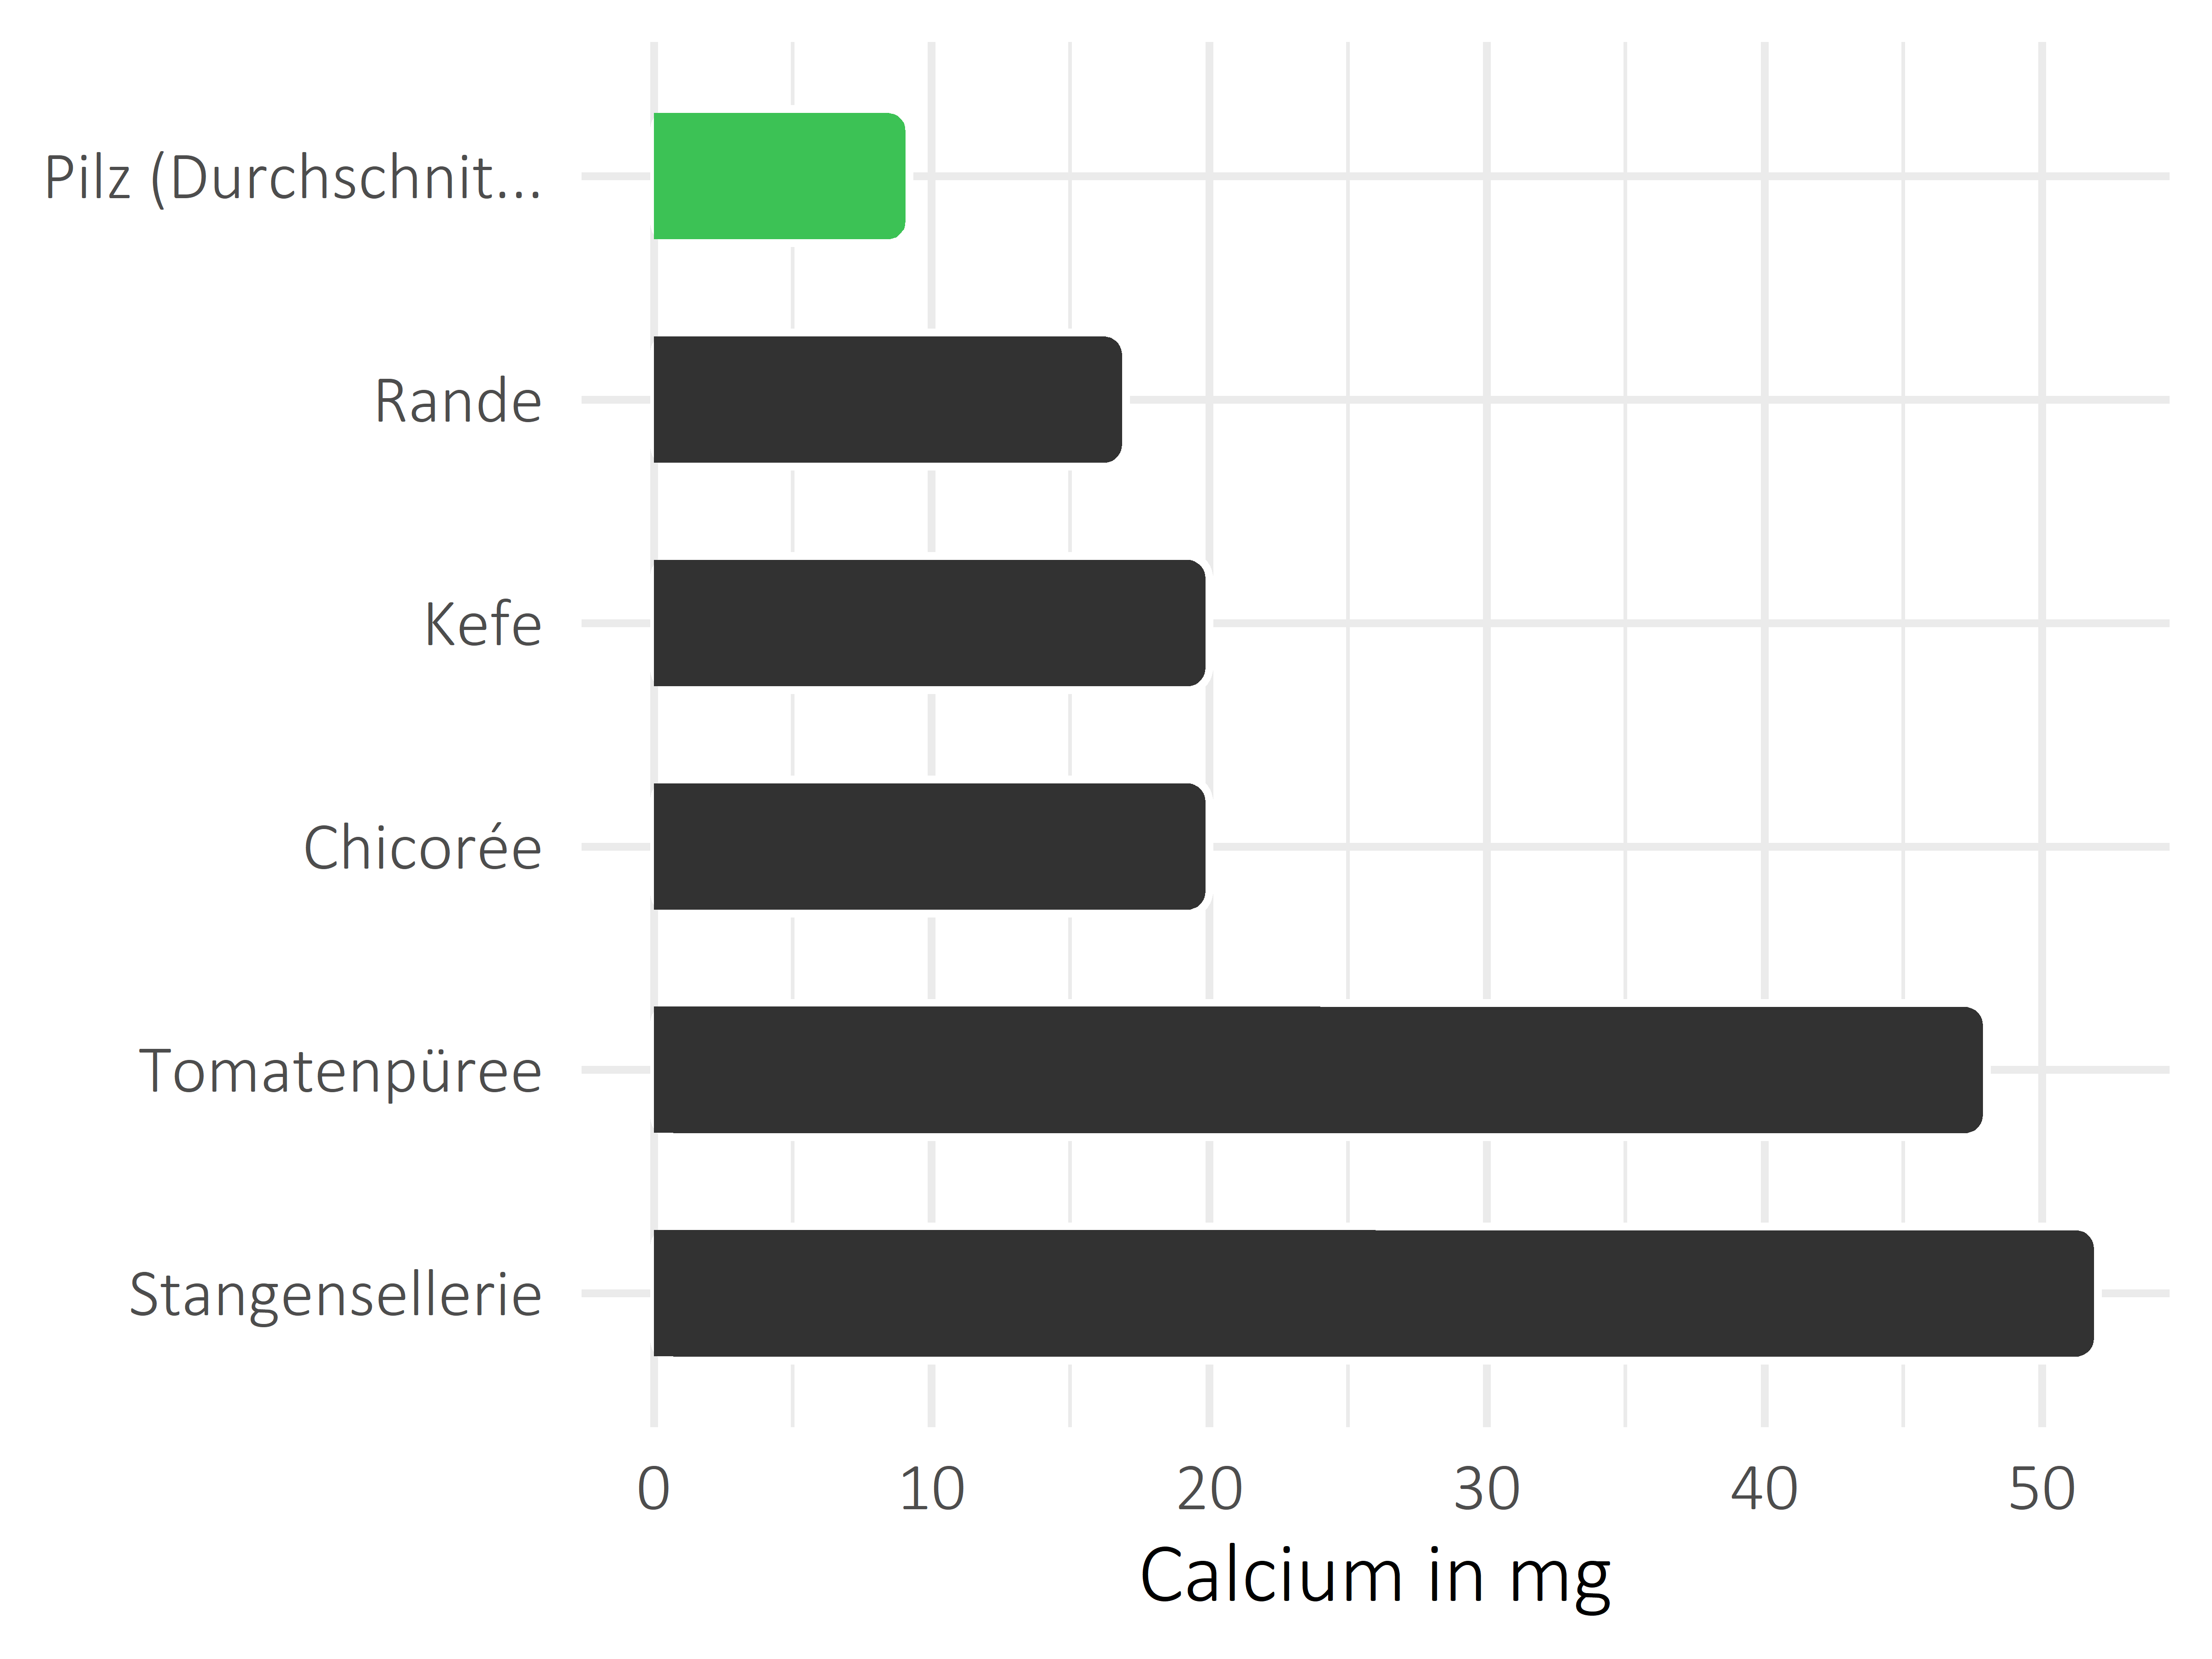 Gemüsesorten Calcium